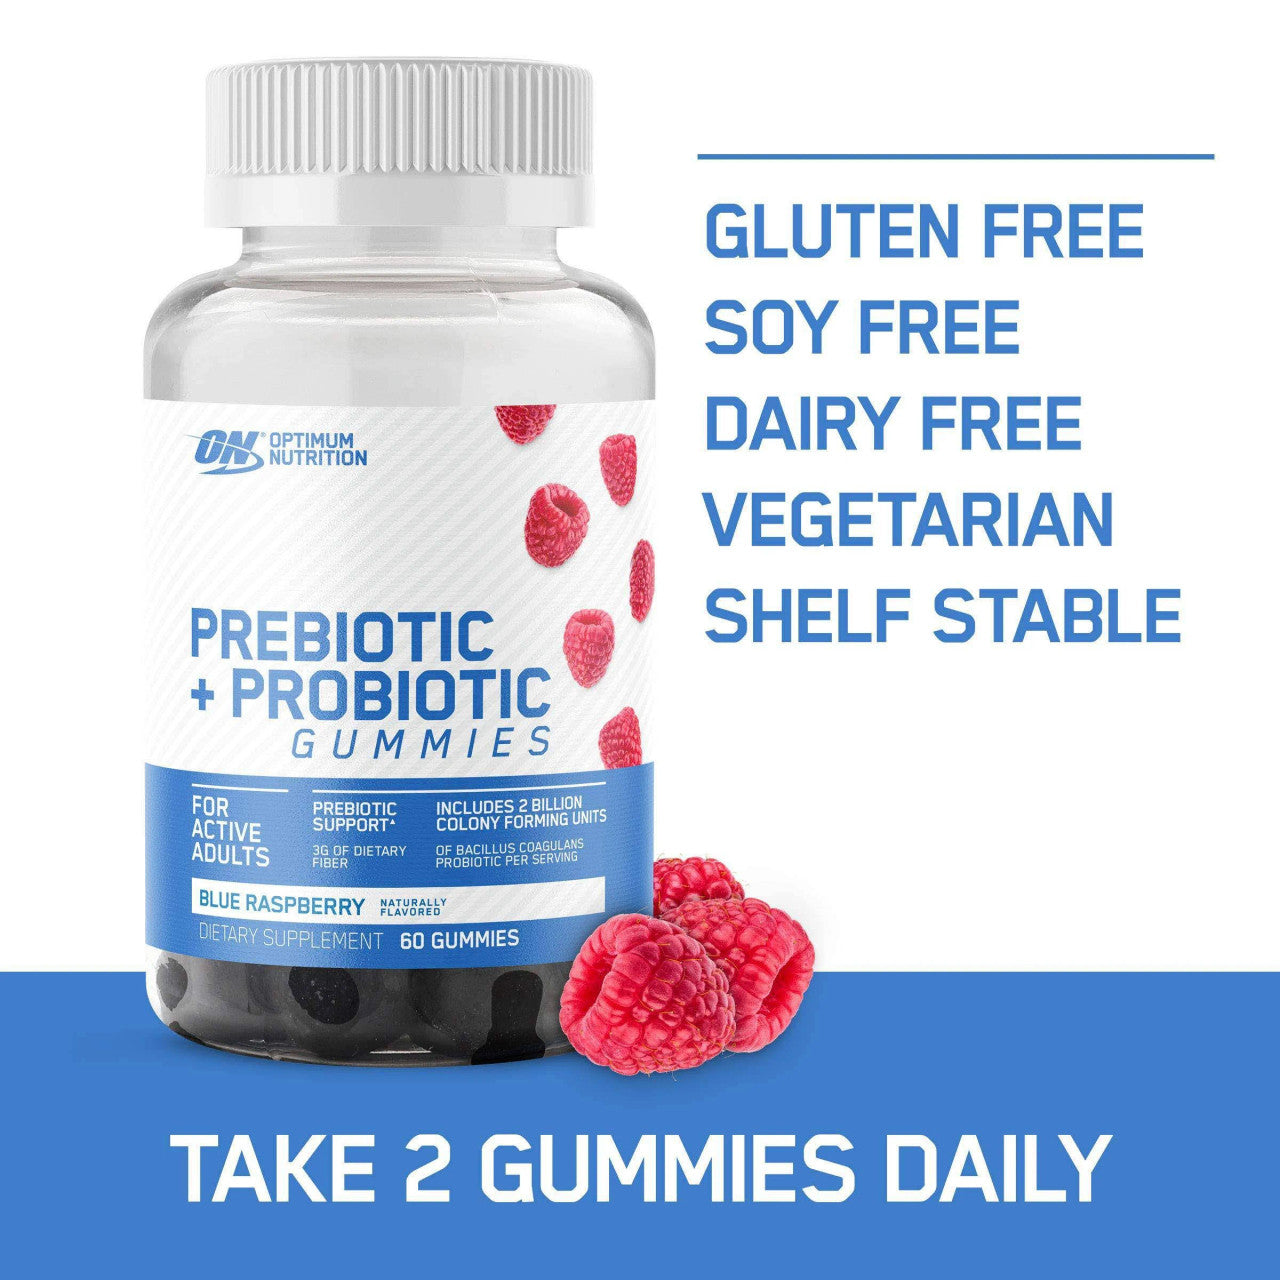 Optimum Nutrition Prebiotic + Probiotic Gummies  Directions